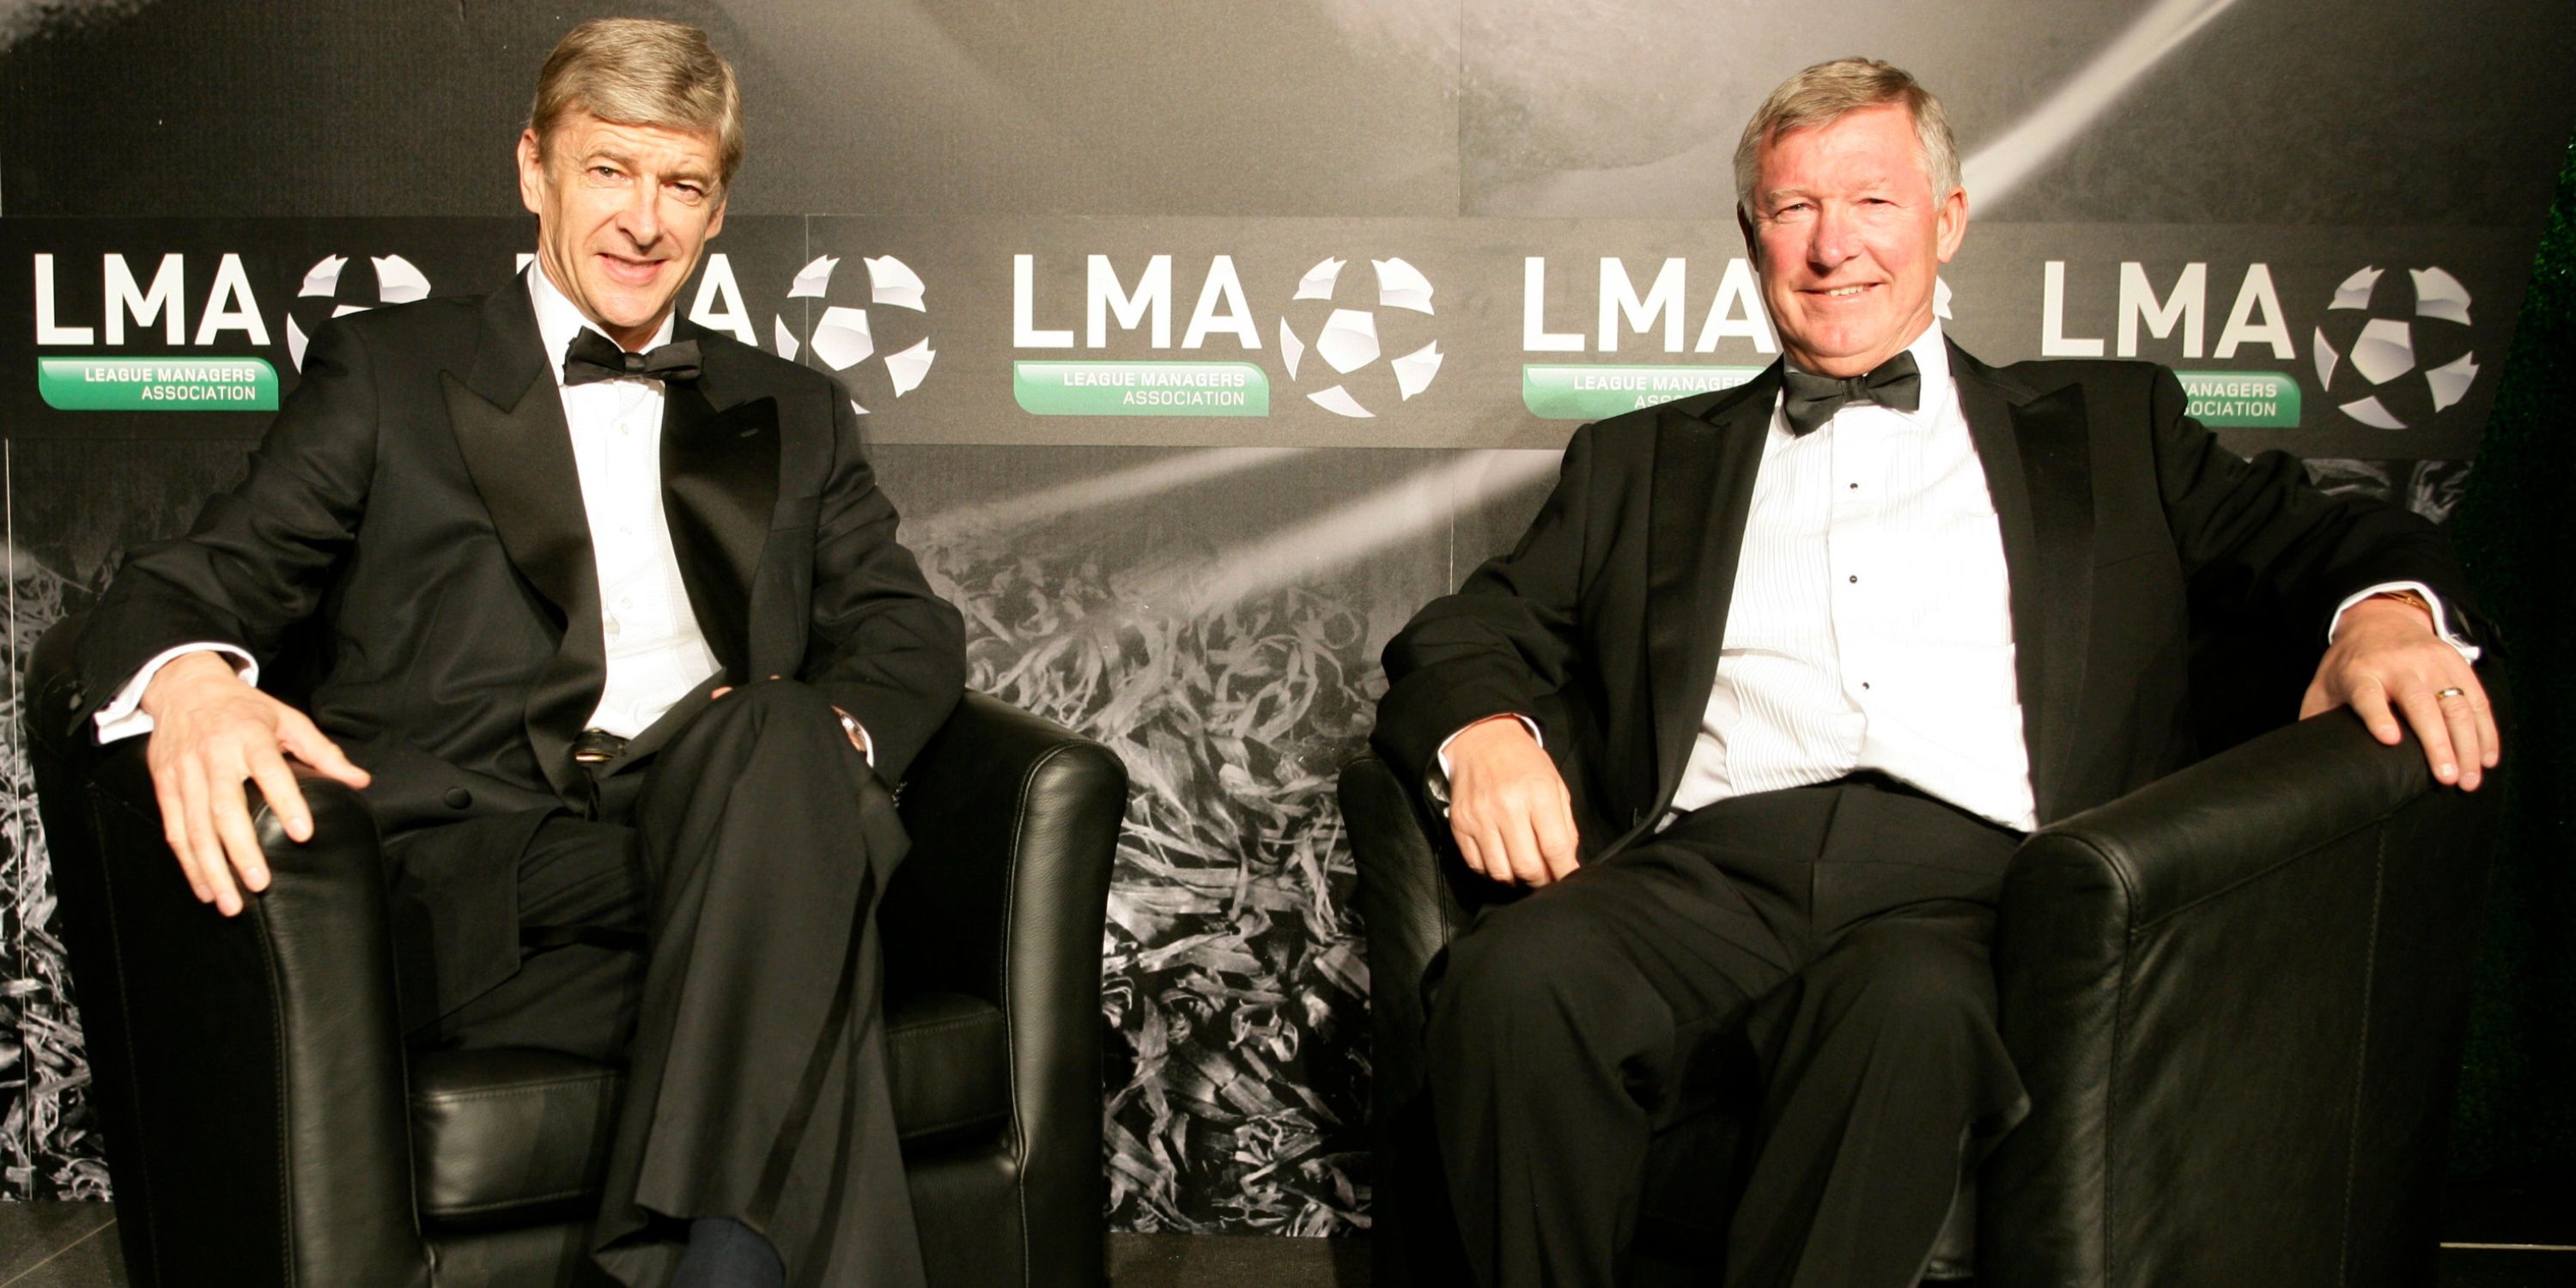 Wenger and Ferguson